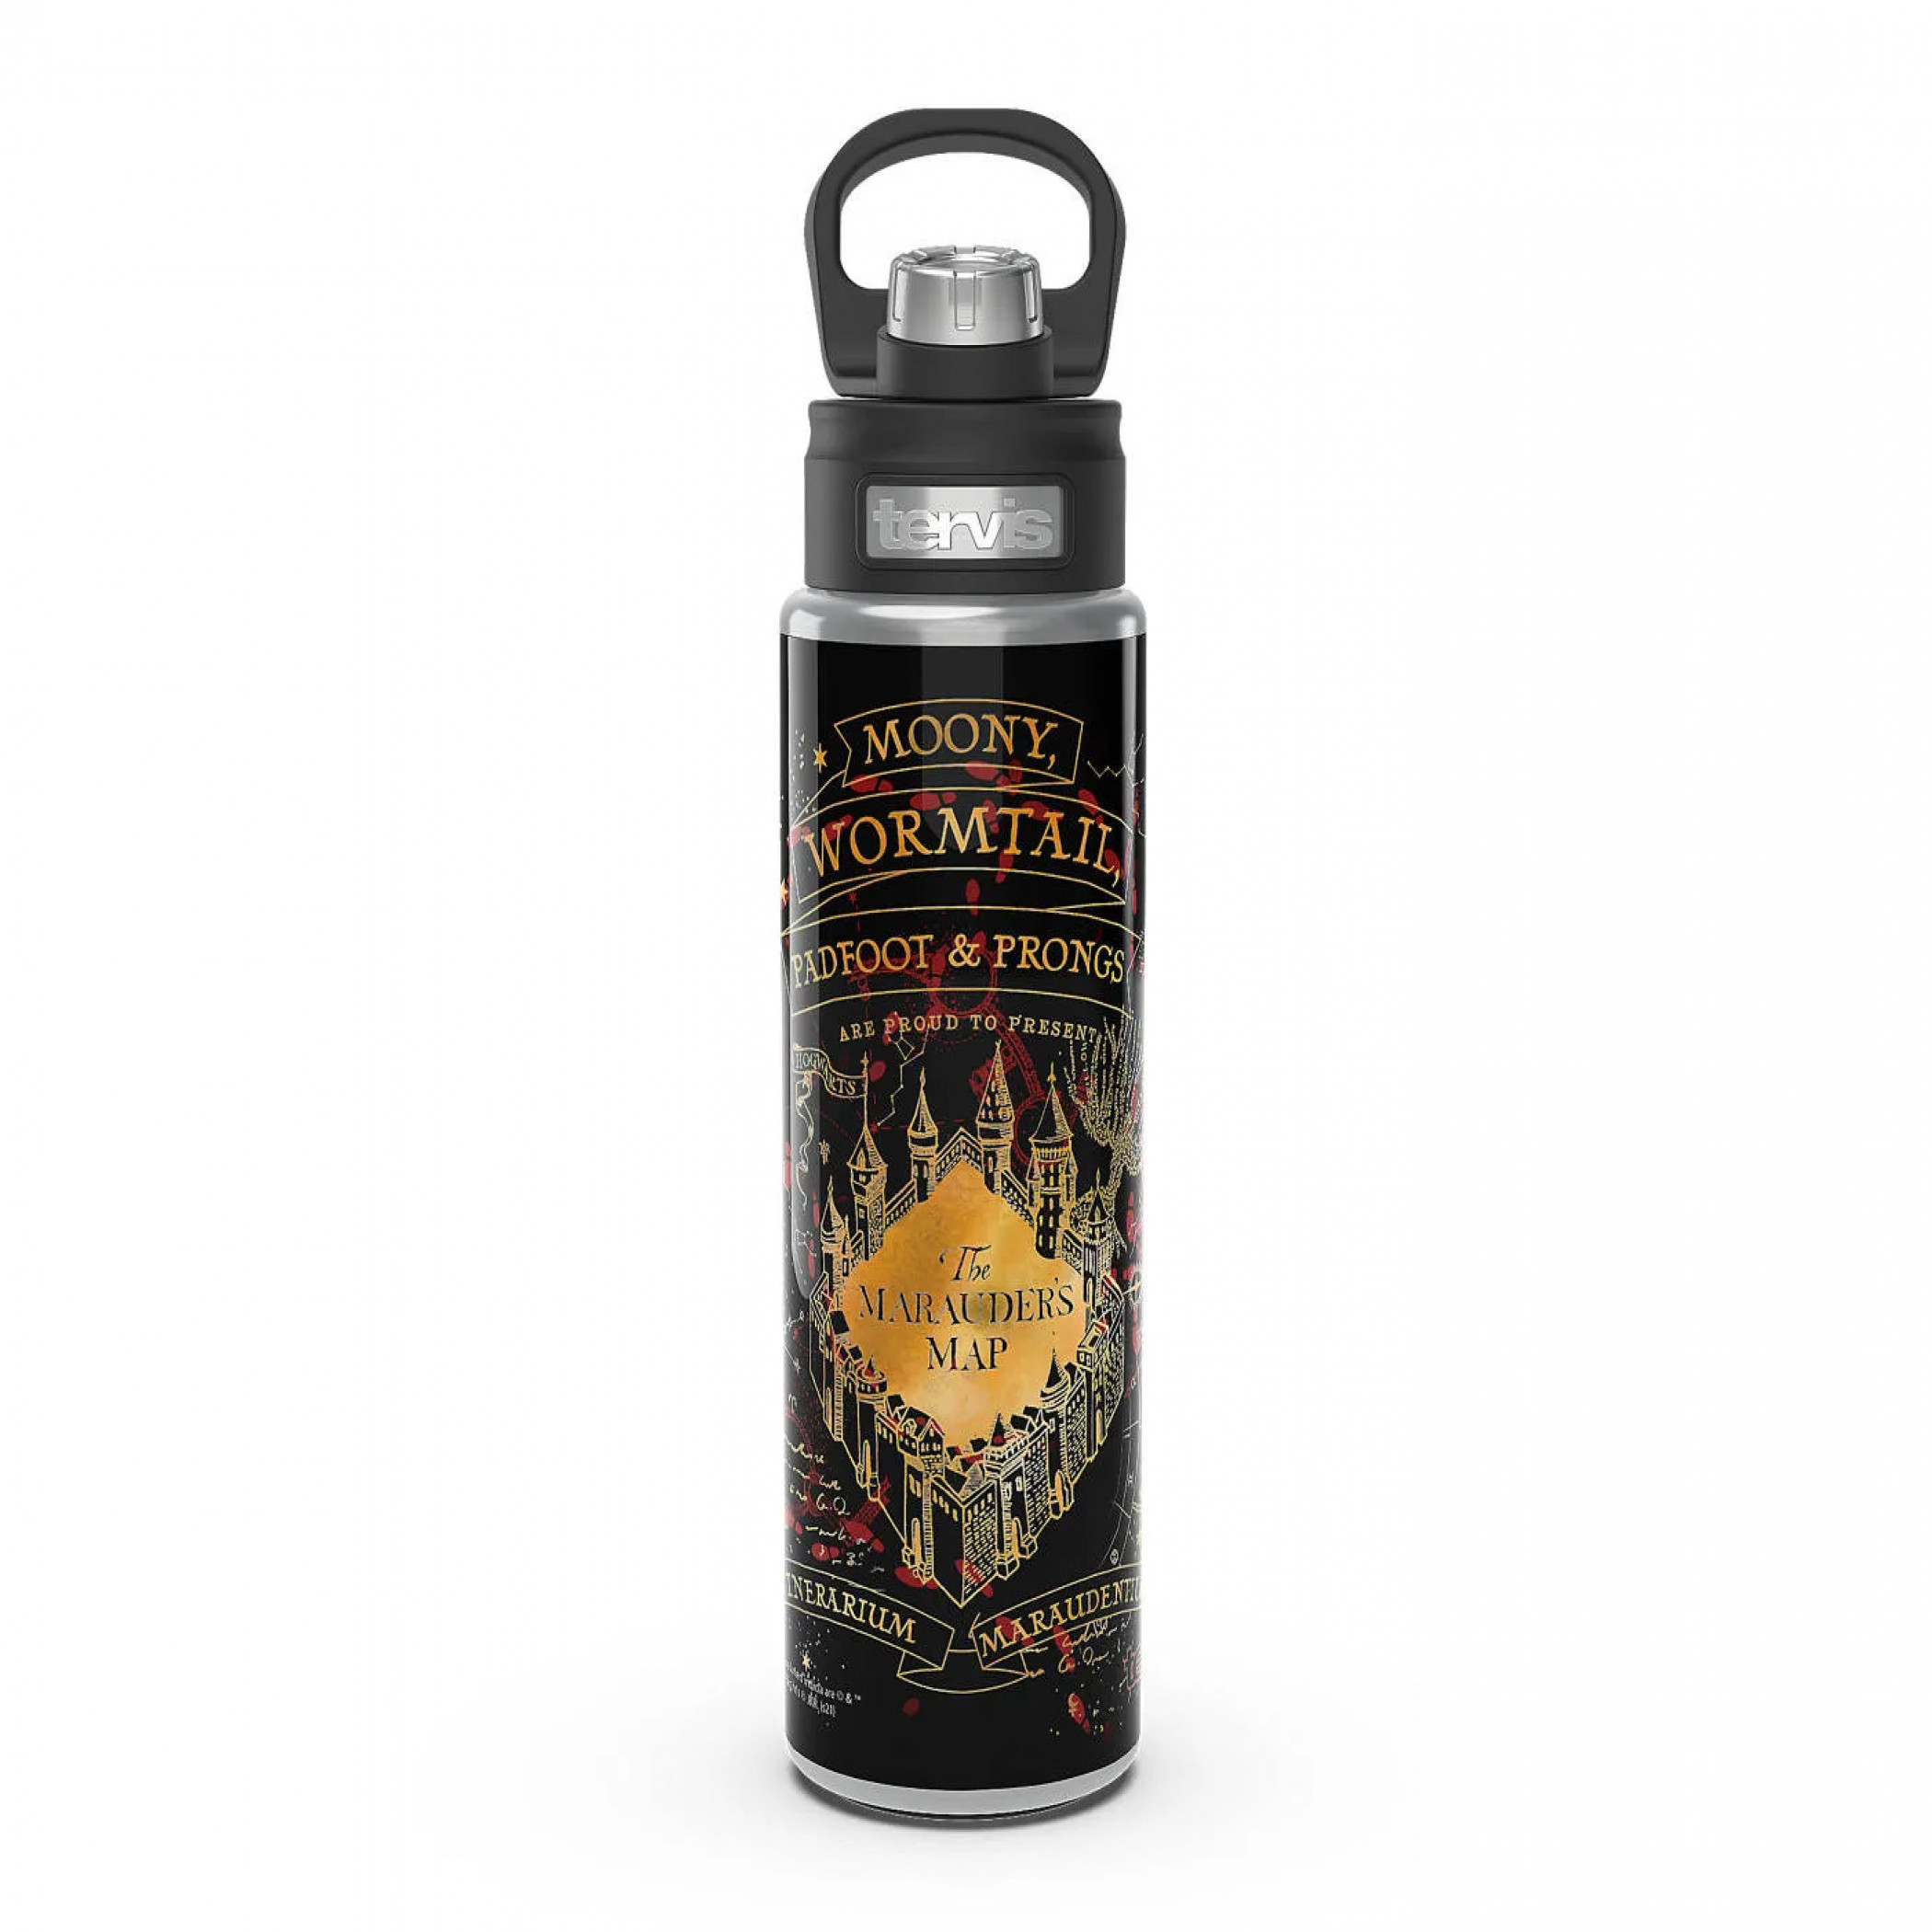 Bottle Harry Potter - Slytherin